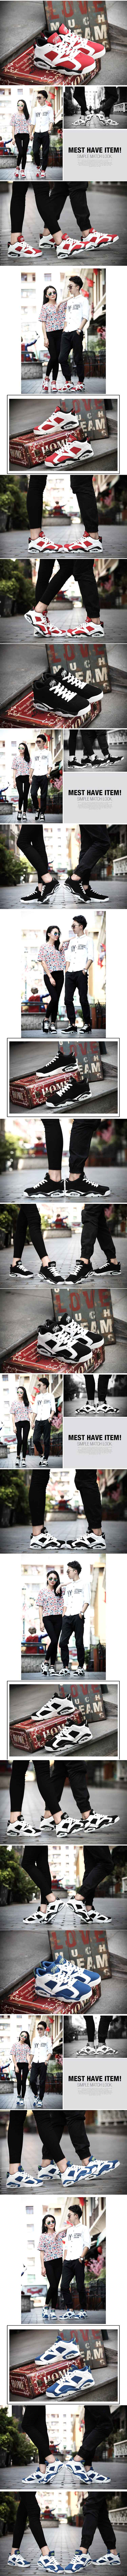 jual sepatu boot yang sedang trend dikorea, temukan juga koleksi sepatu pria model terbaru lain nya hanya di pfp store